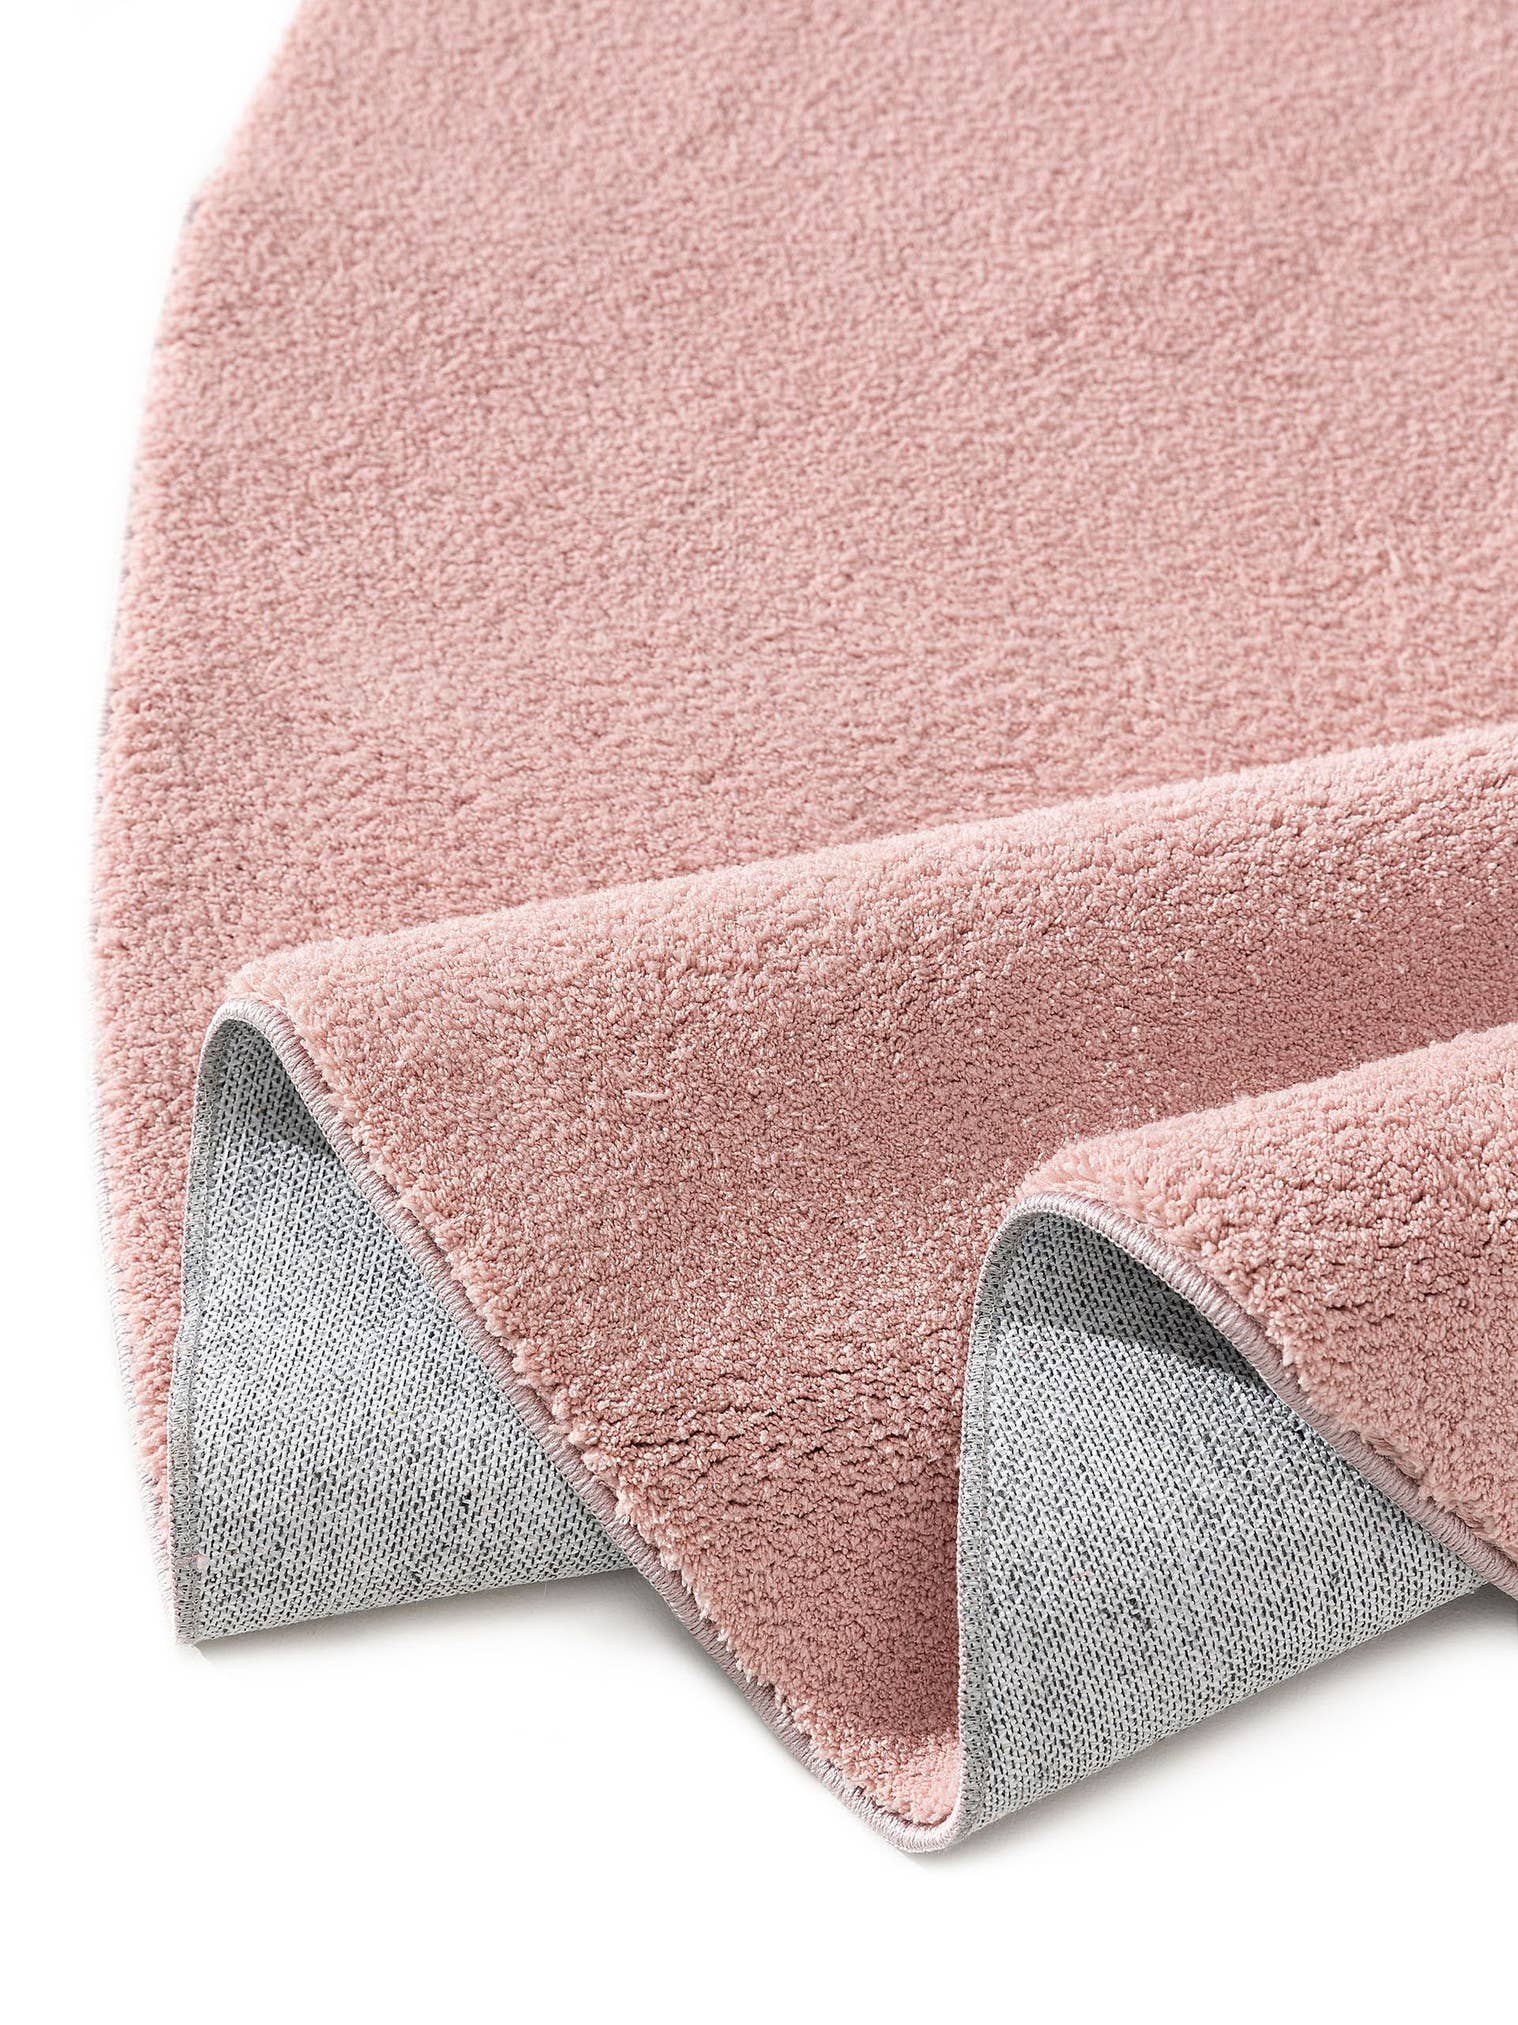 Teppich aus 100% Polyester in Rosa mit 6 bis 10 mm hohem Flor von benuta Pop